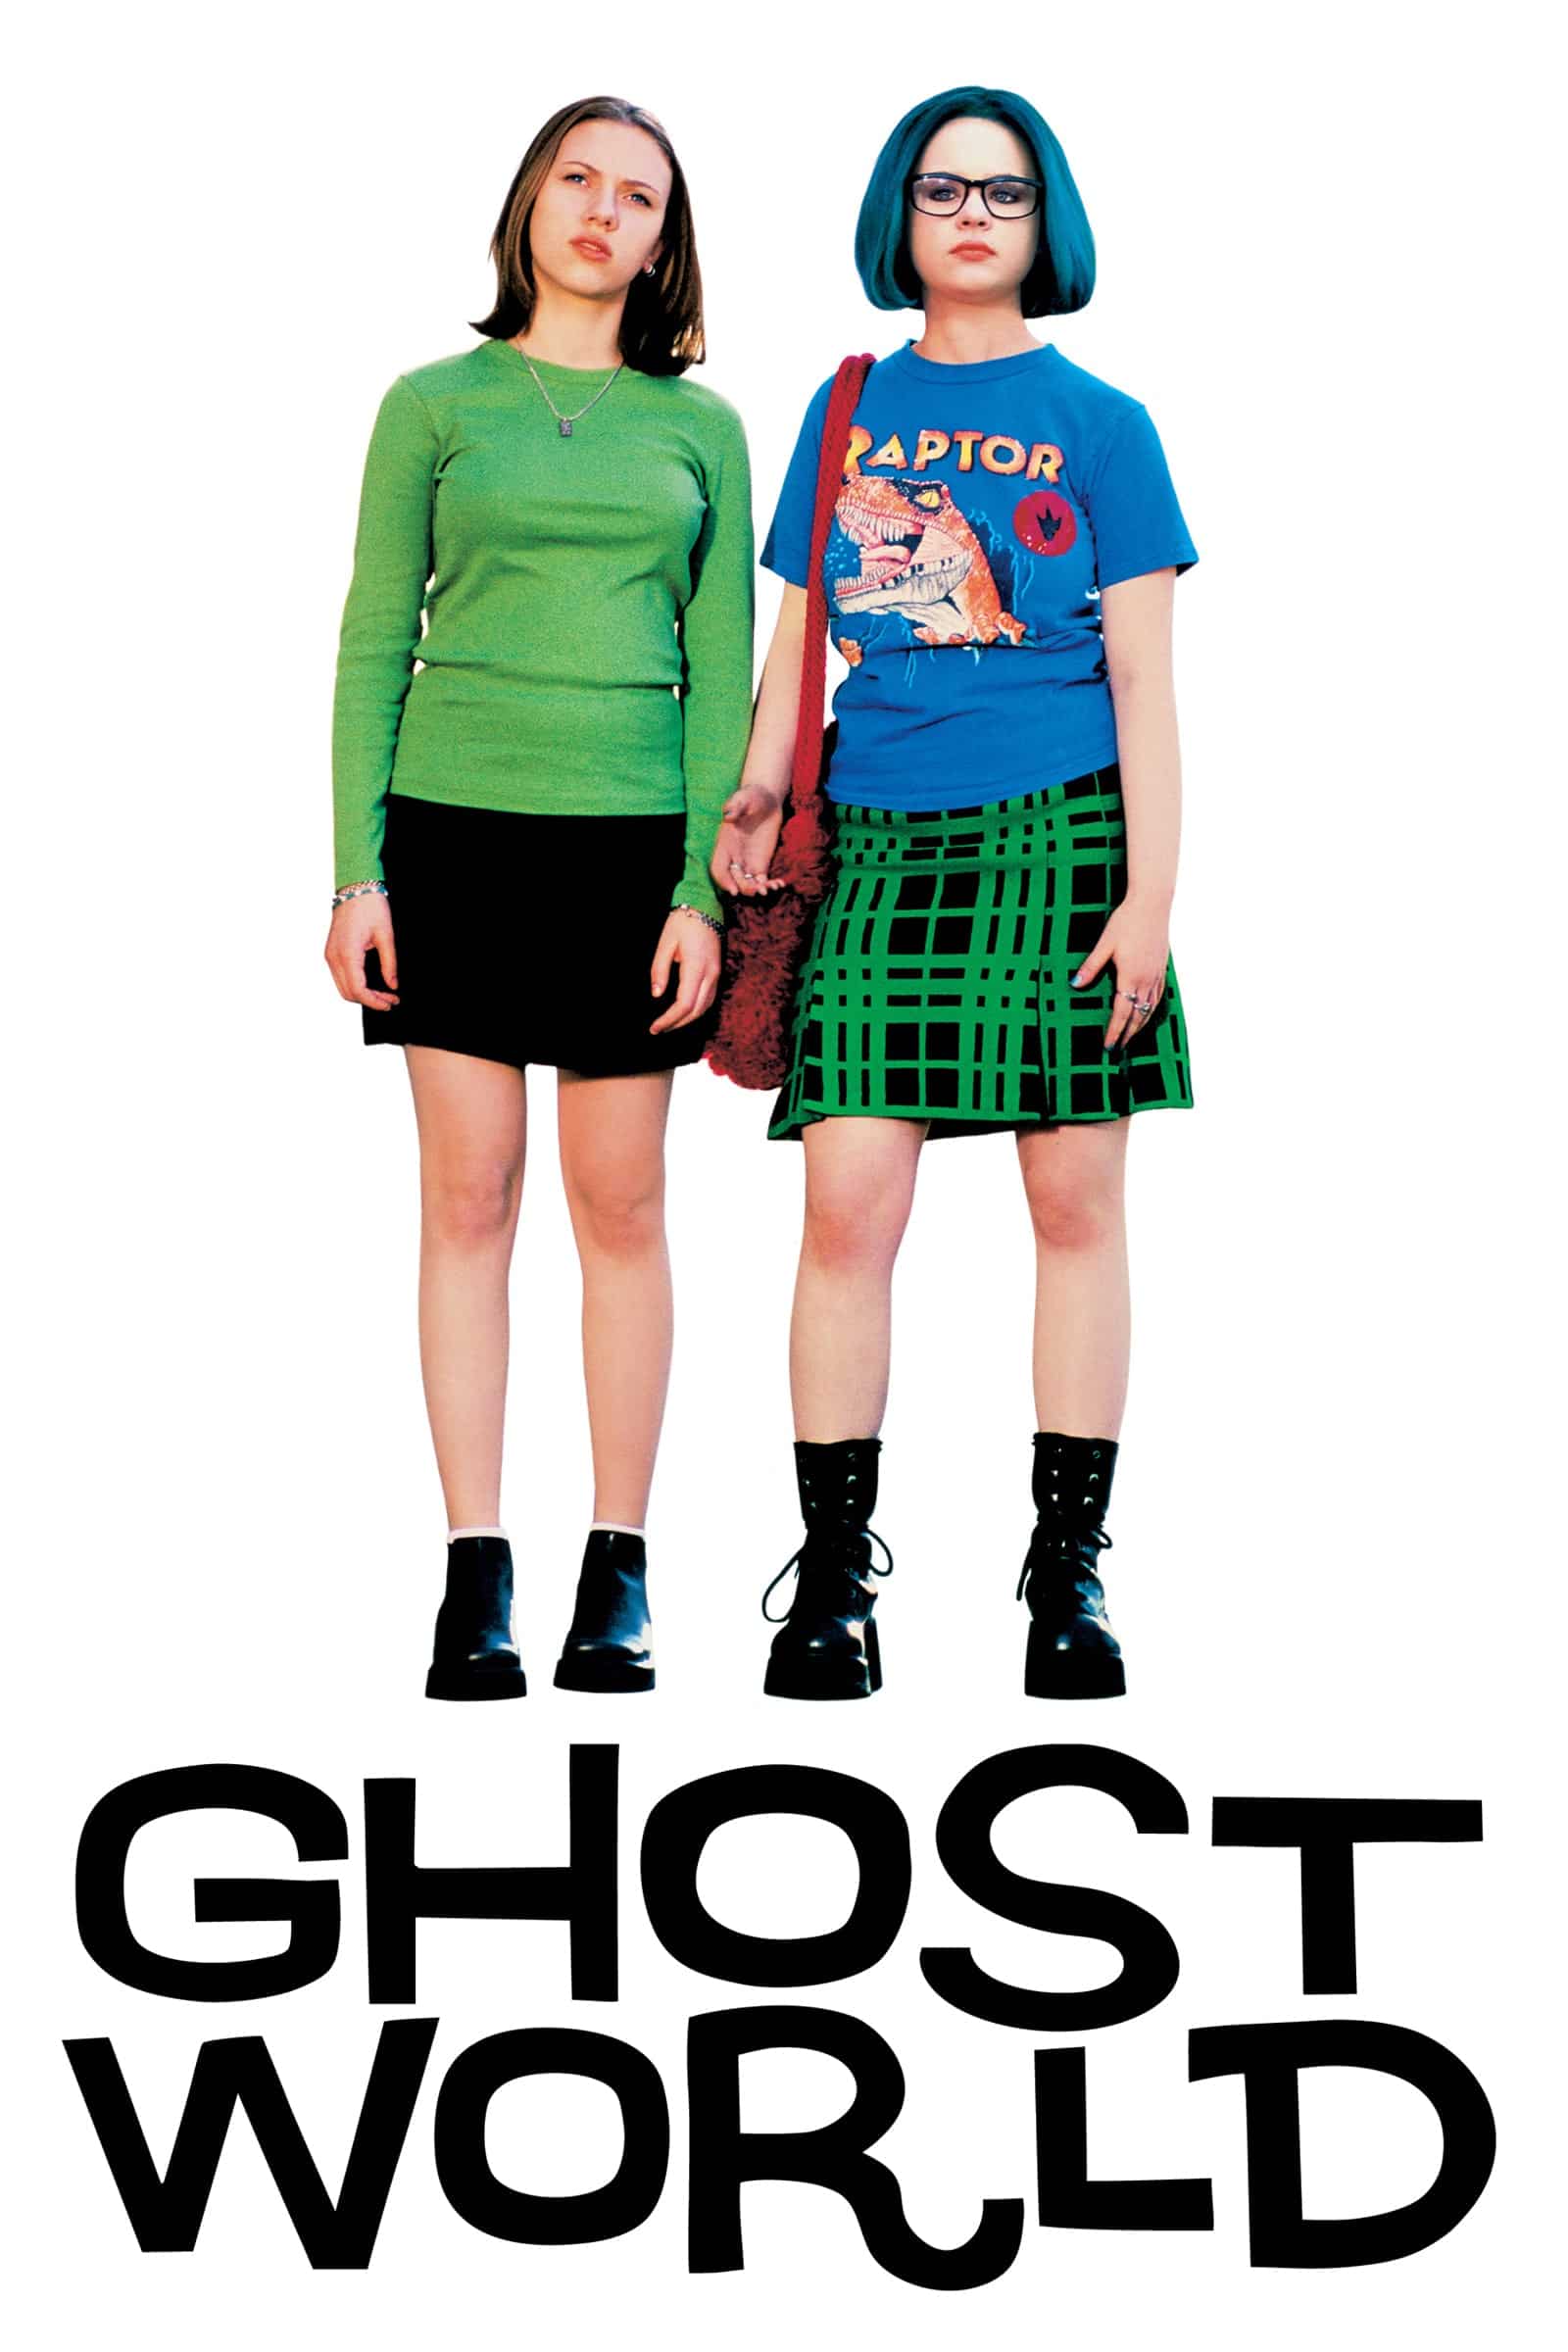 Plakat von "Ghost World"